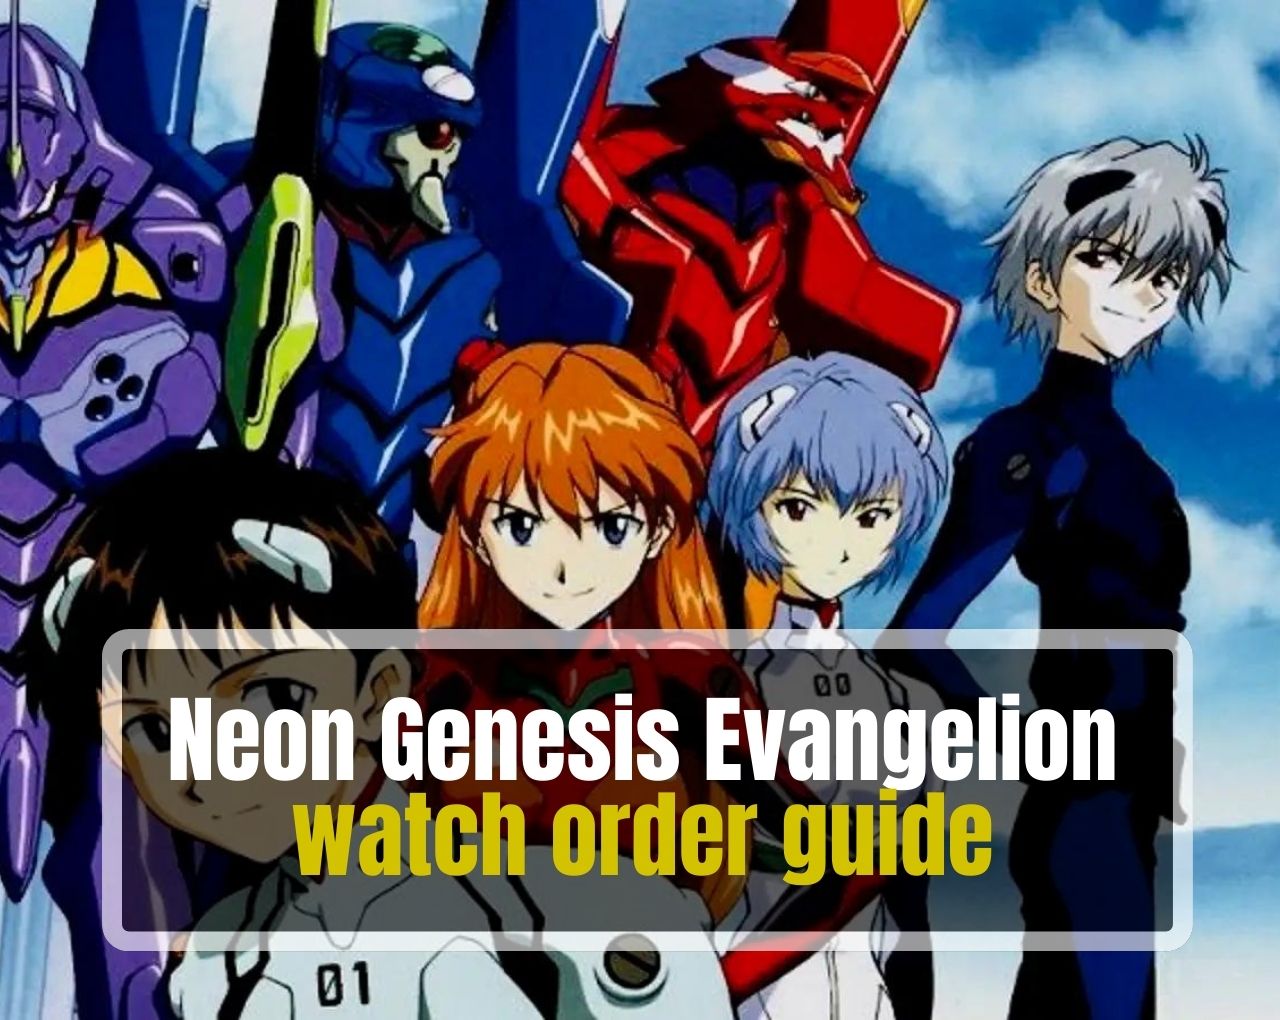 Evangelion watch order guide